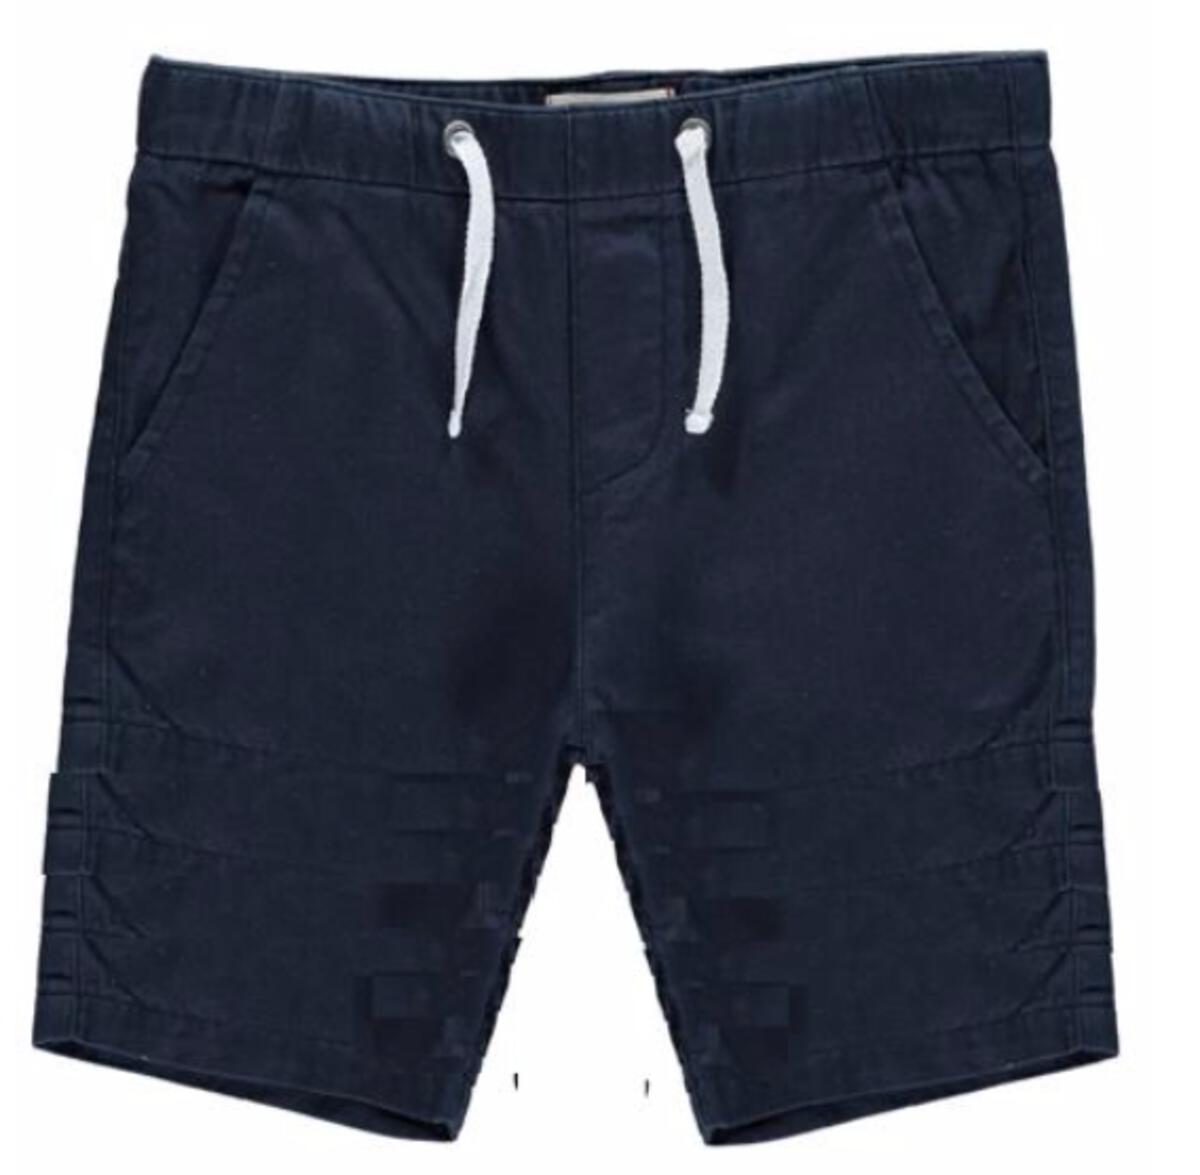 brian navy bermuda shorts